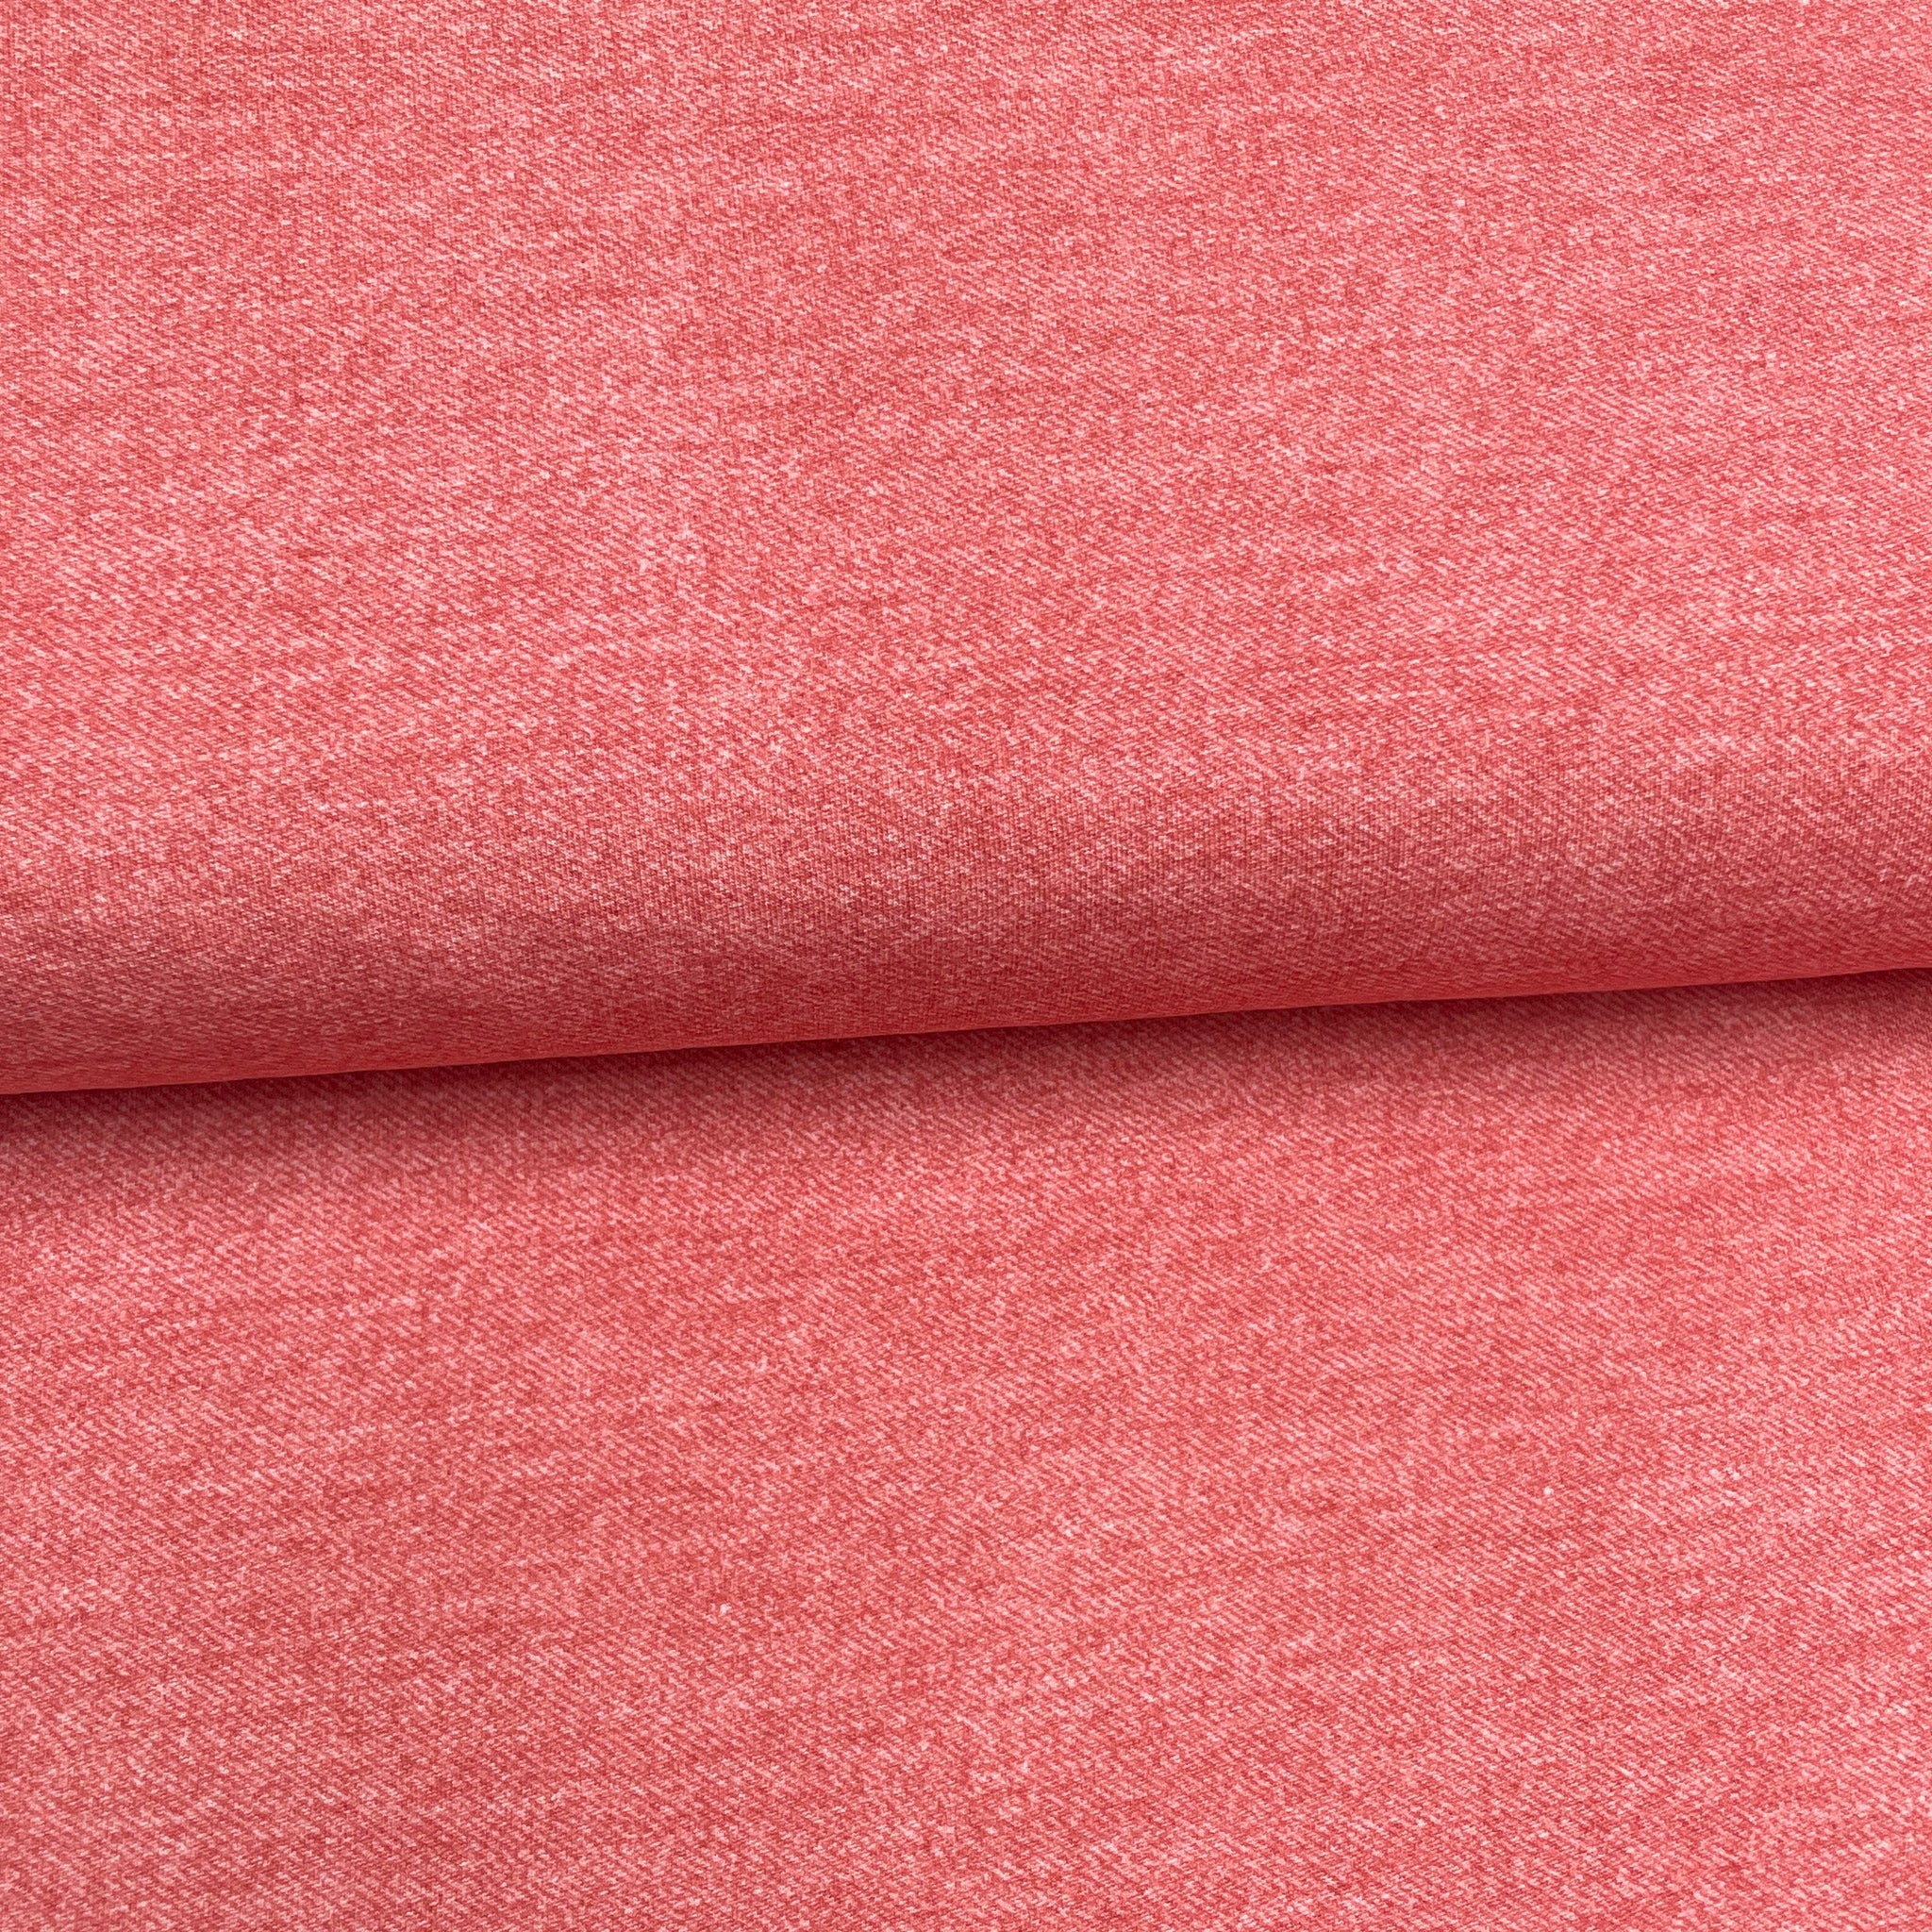 Fin de rouleau 74 cm - Style jeans corail - Jersey imprimé